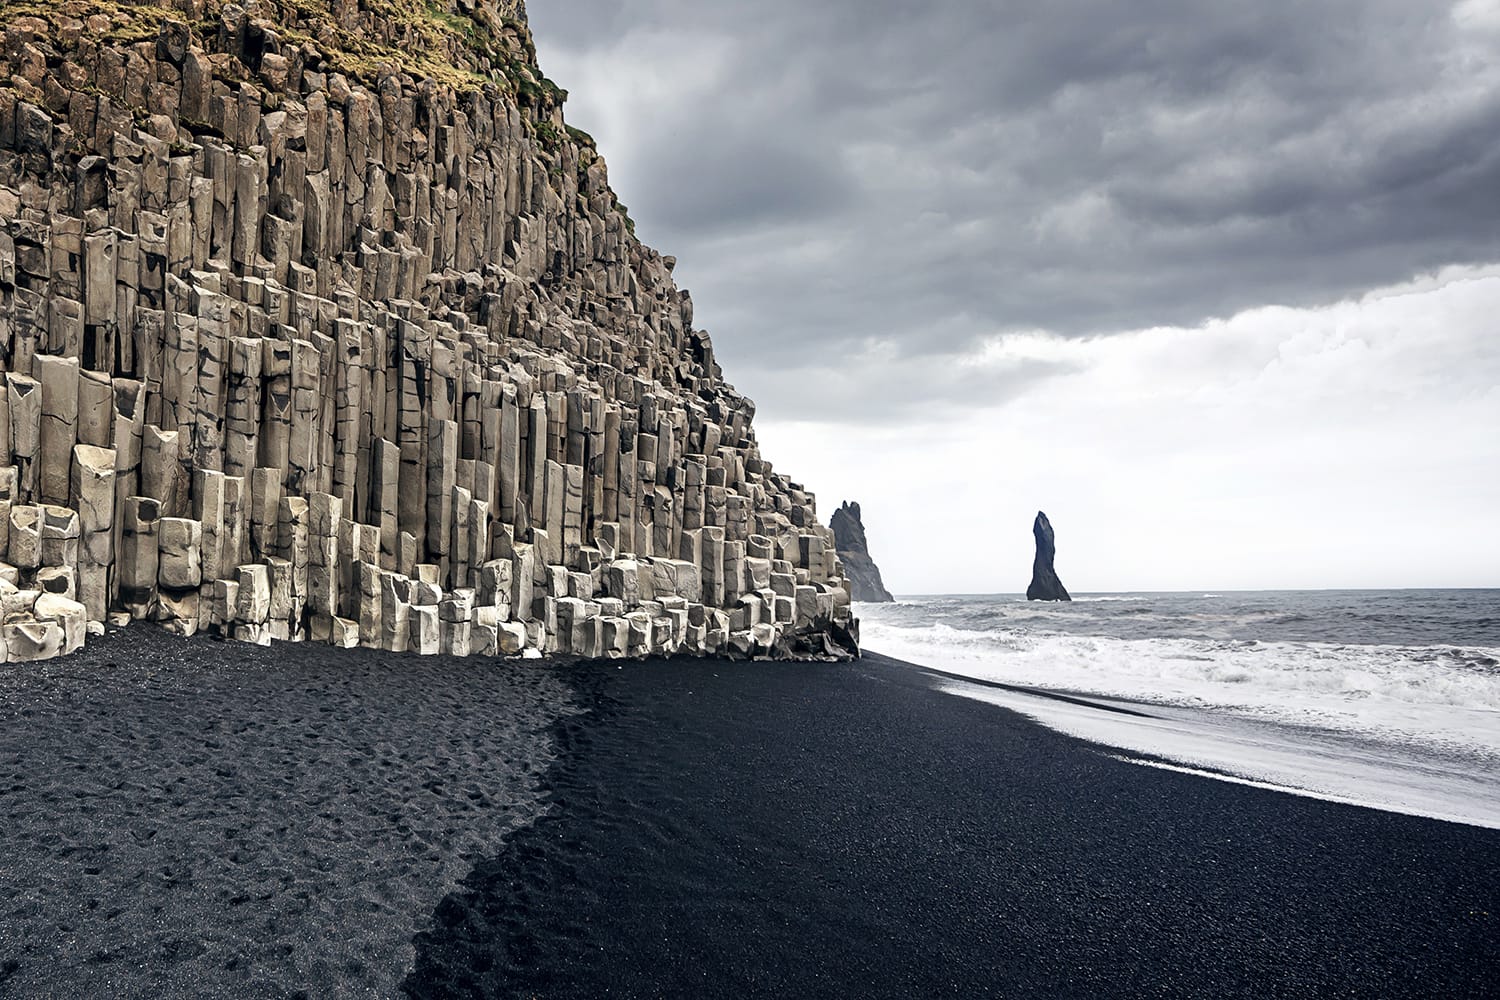 La spiaggia di sabbia nera di Reynisfjara e il monte Reynisfjall dal promontorio di Dyrholaey nella costa meridionale dell'Islanda.